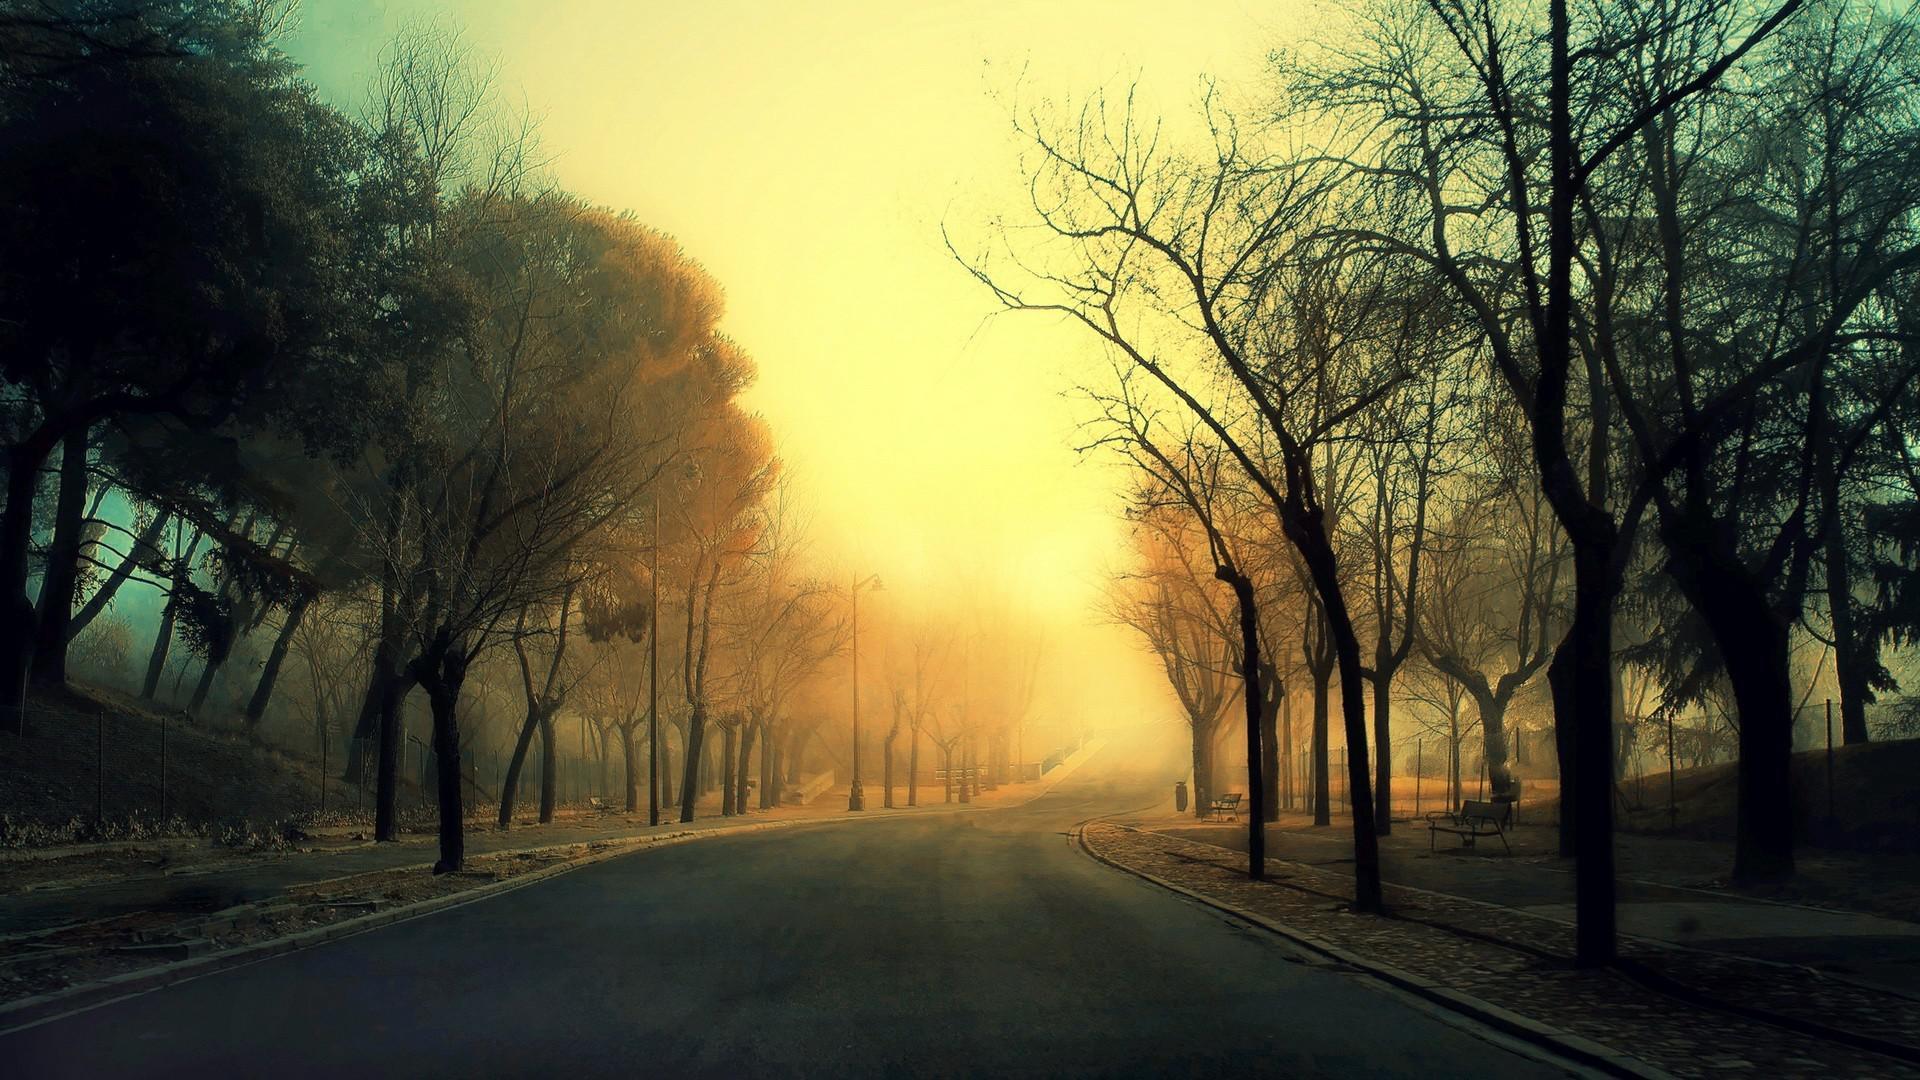 HD Roads, sidewalks, trees, fog, landscape Wallpaper